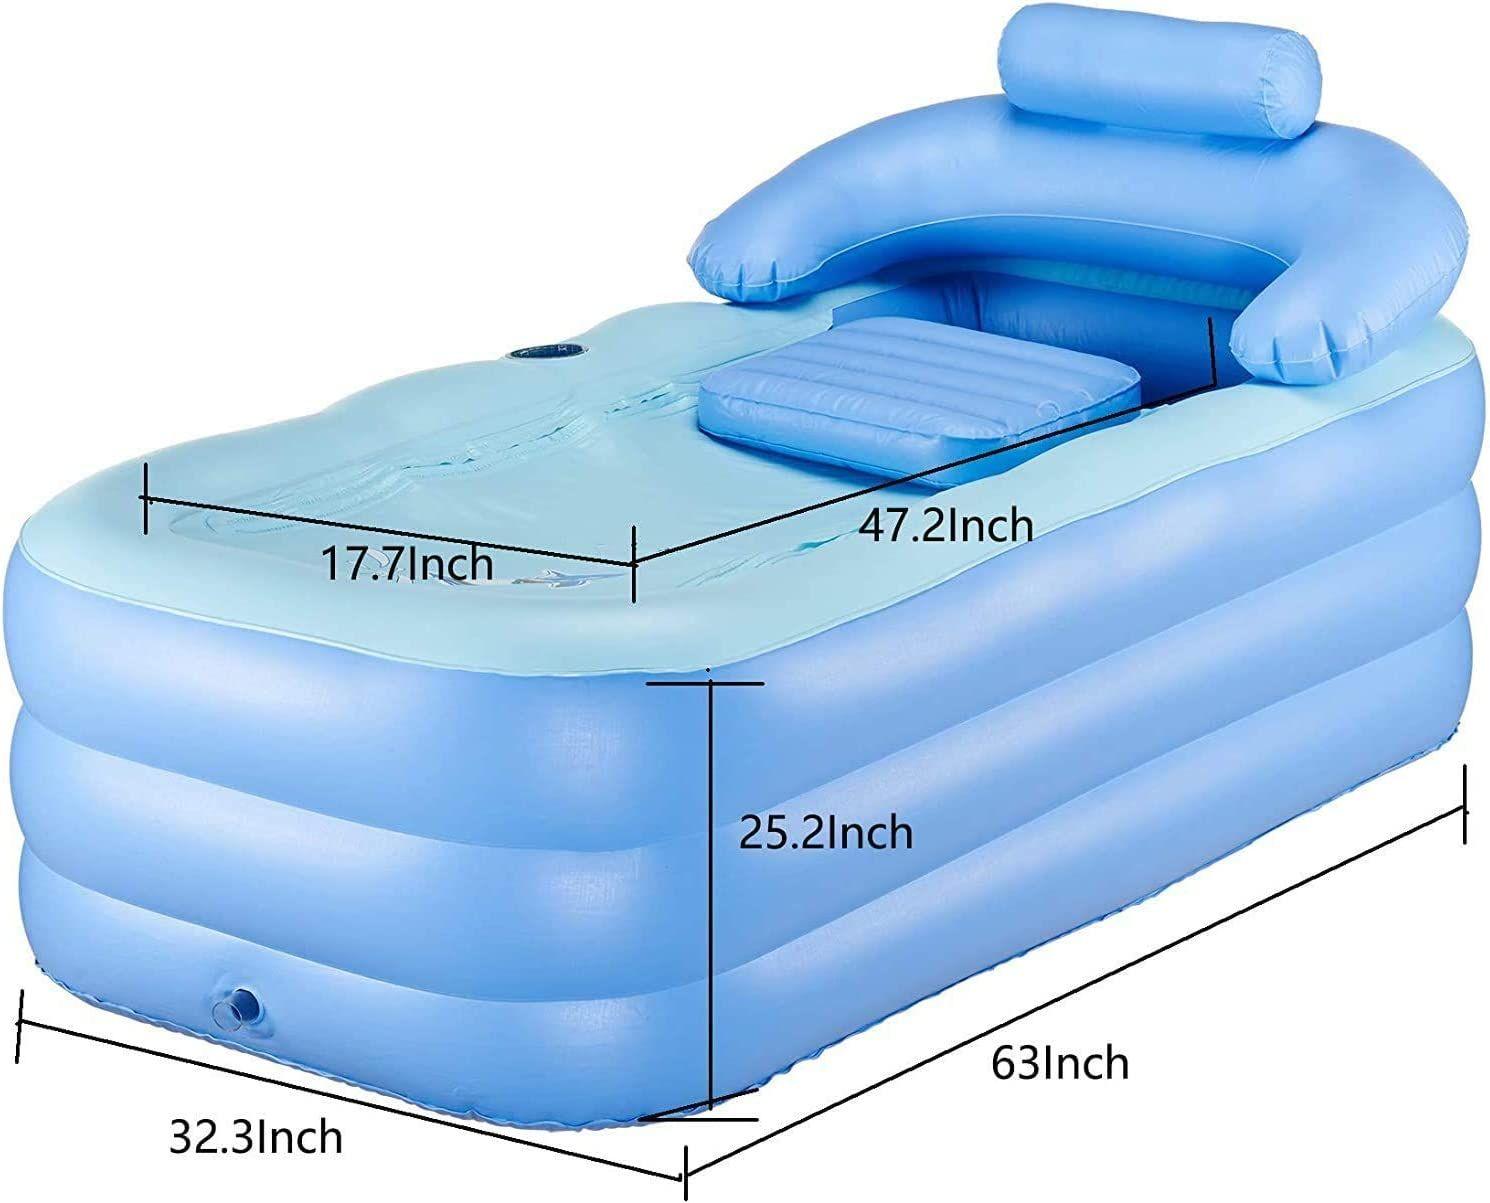 Baignoire gonflable portable pour adulte avec pompe ¿¿ air ¿¿lectrique, en  PVC haute densit¿¿ avec baignoire pliable et portable pour spa adulte (160  x 32 x 64 cm).